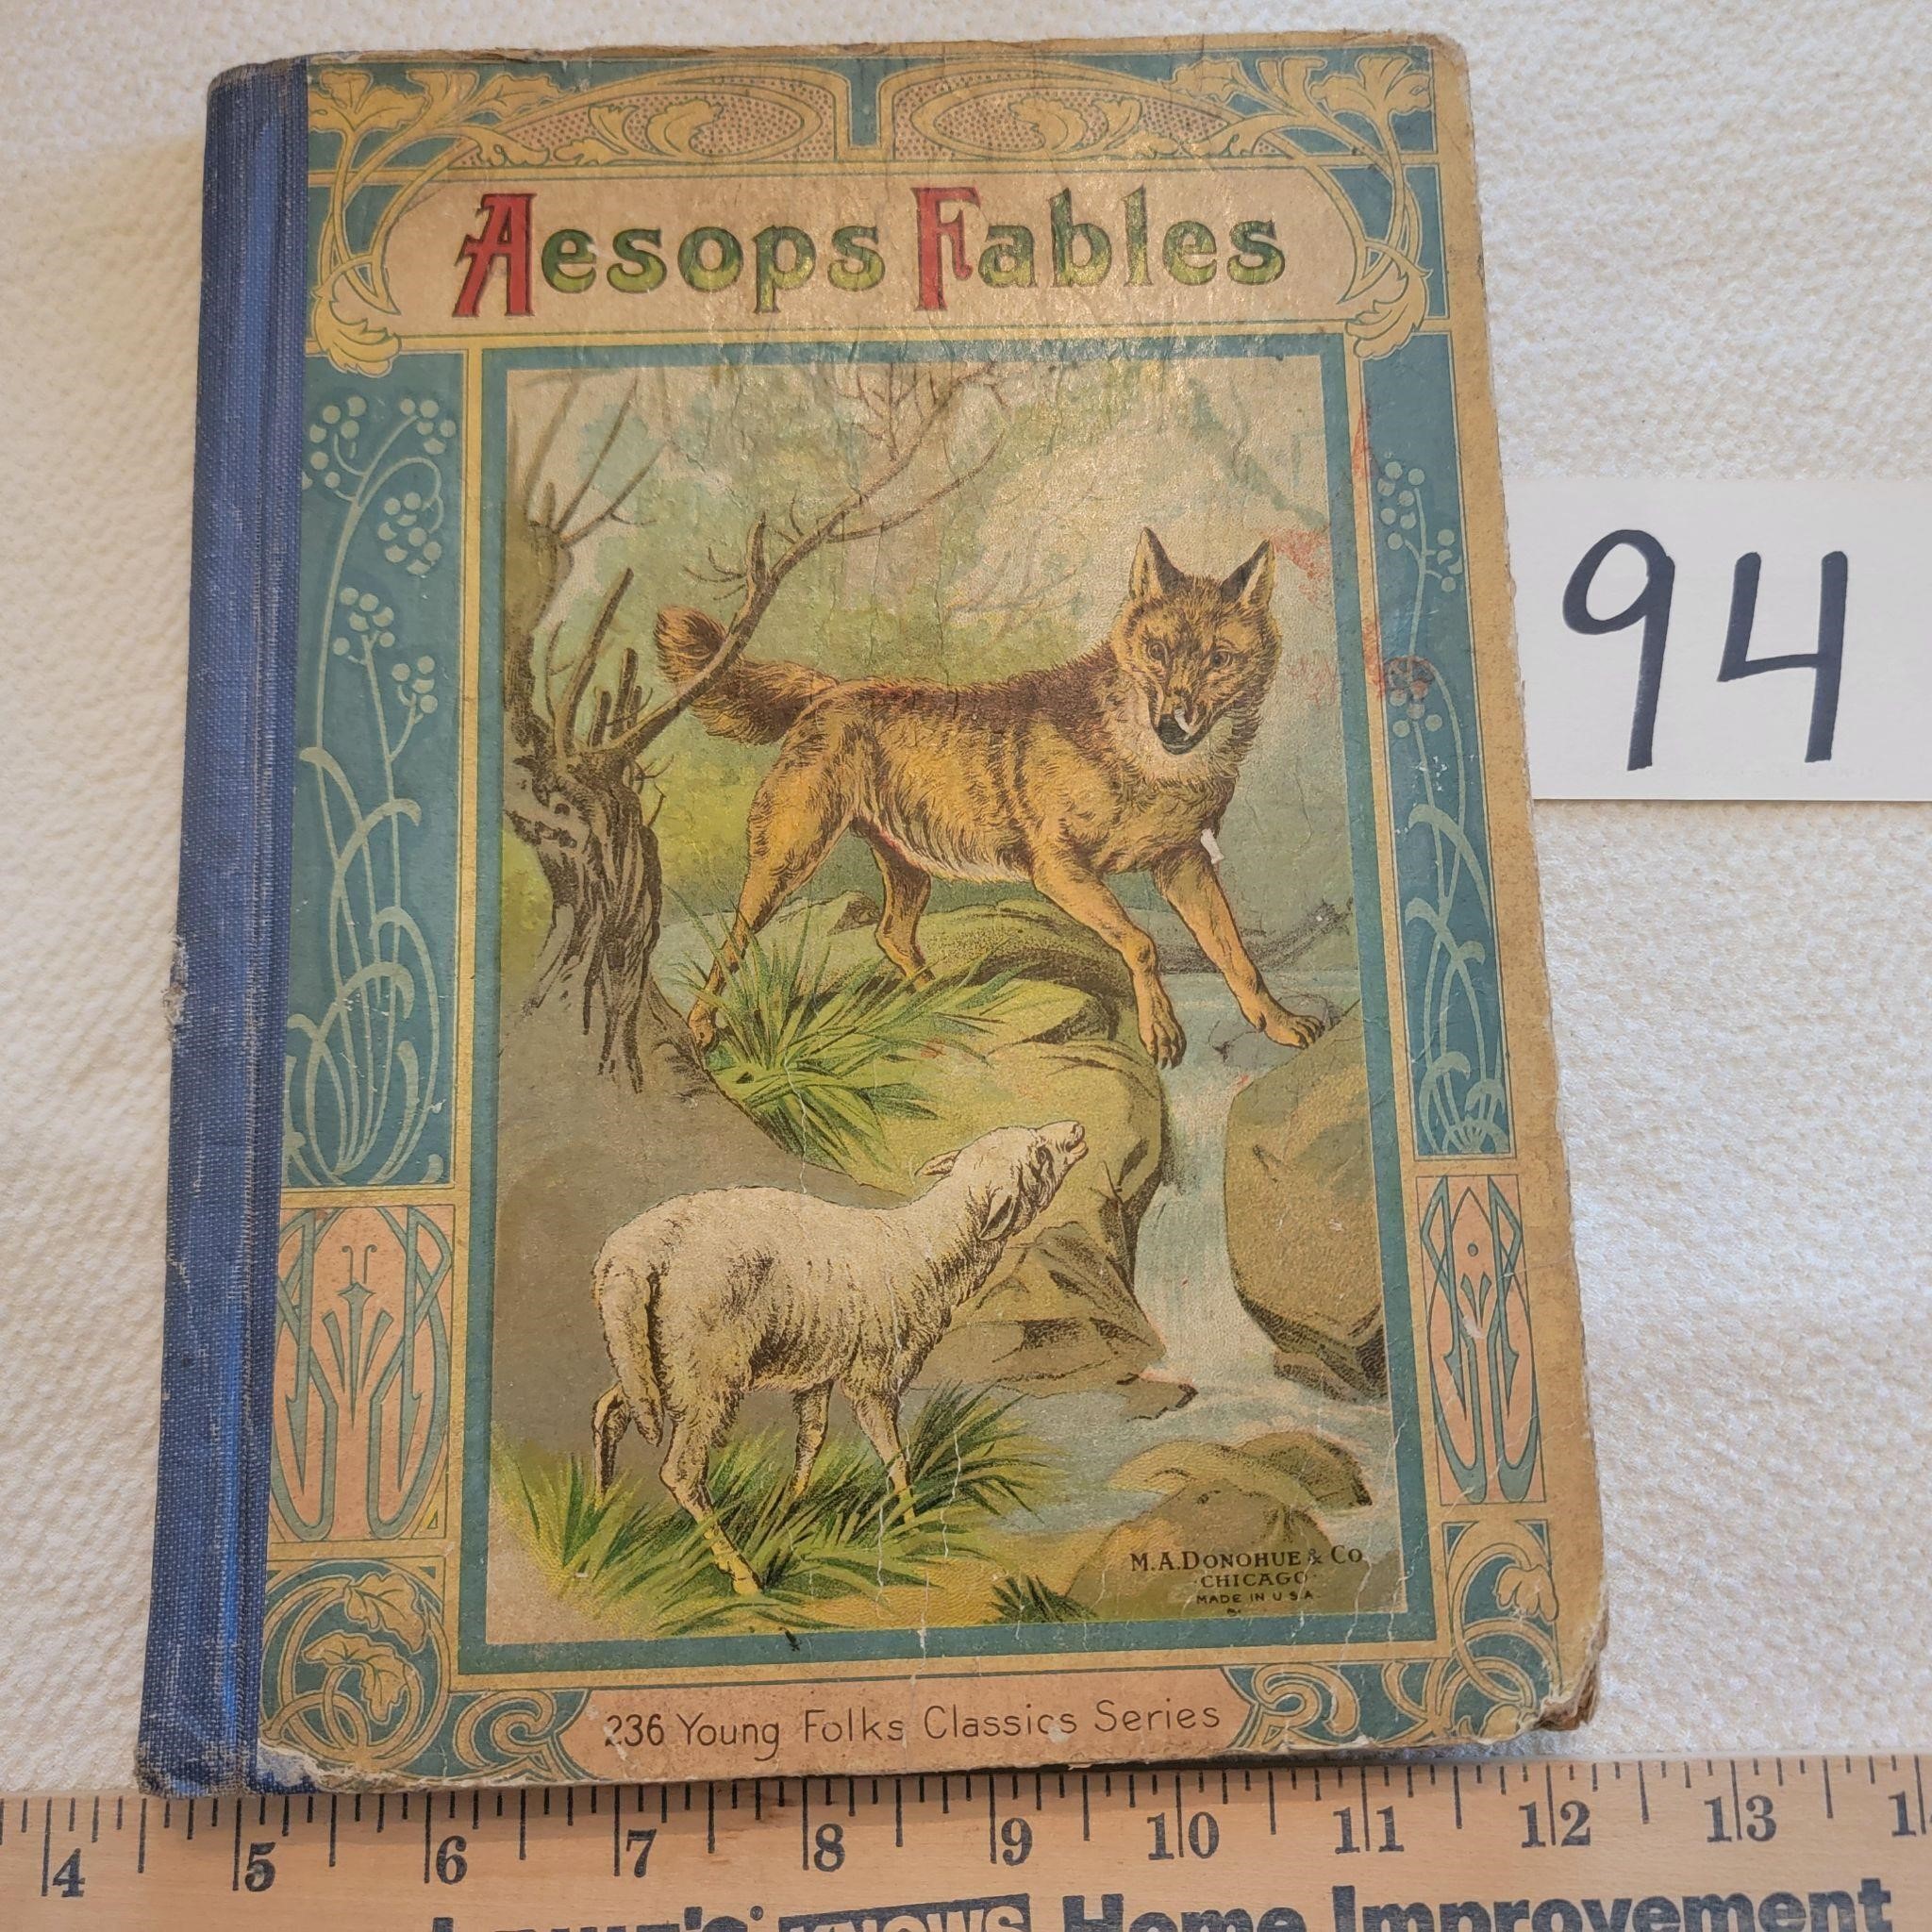 Vintage Children's Book- Aesop's Fables